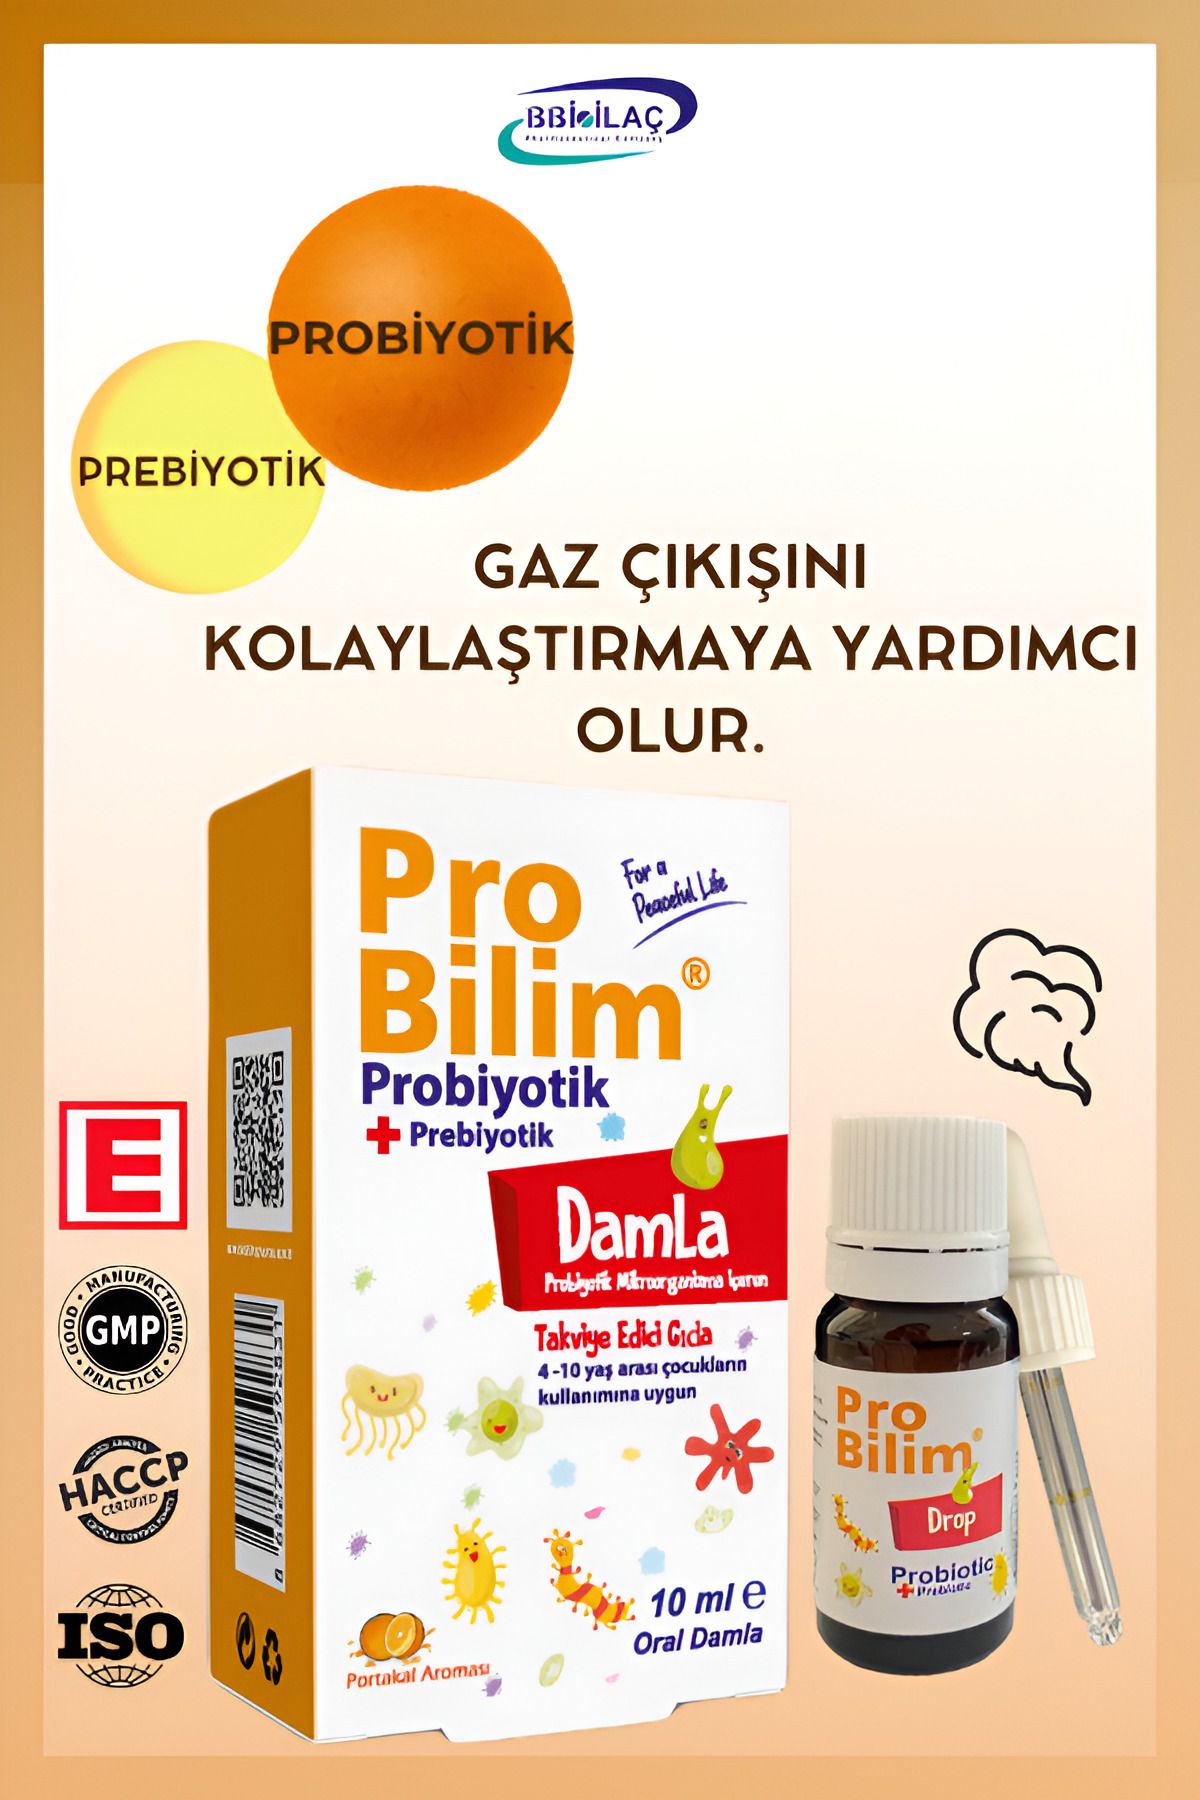 probilim ® Damla 10 ml , Probiyotik, Prebiyotik, Gaz Damlası